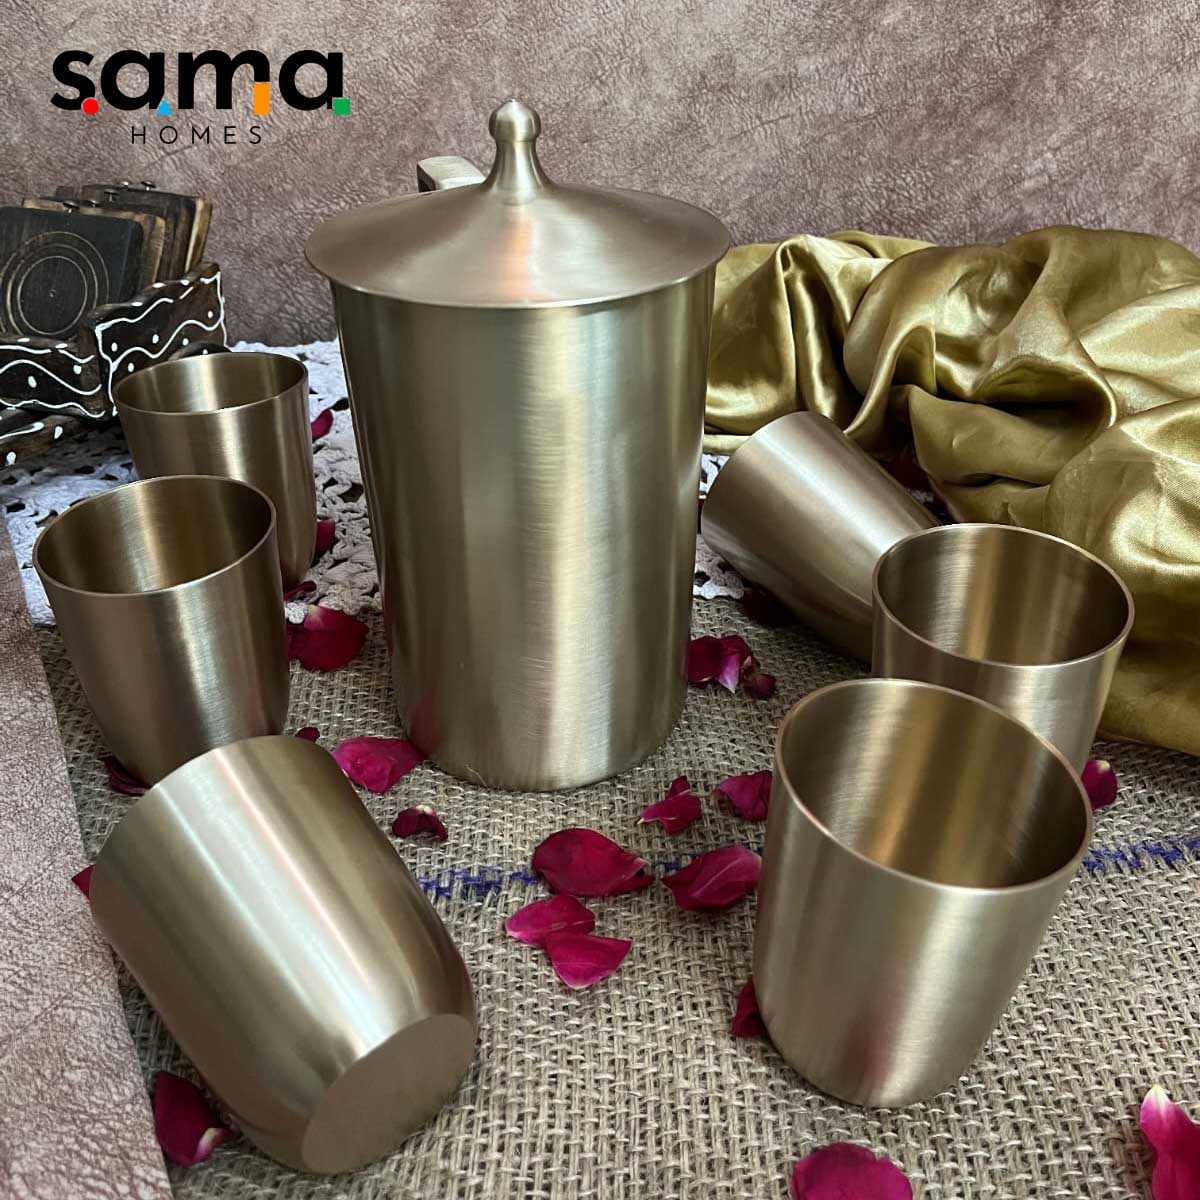 SAMA Homes - kansa bronze lemon set